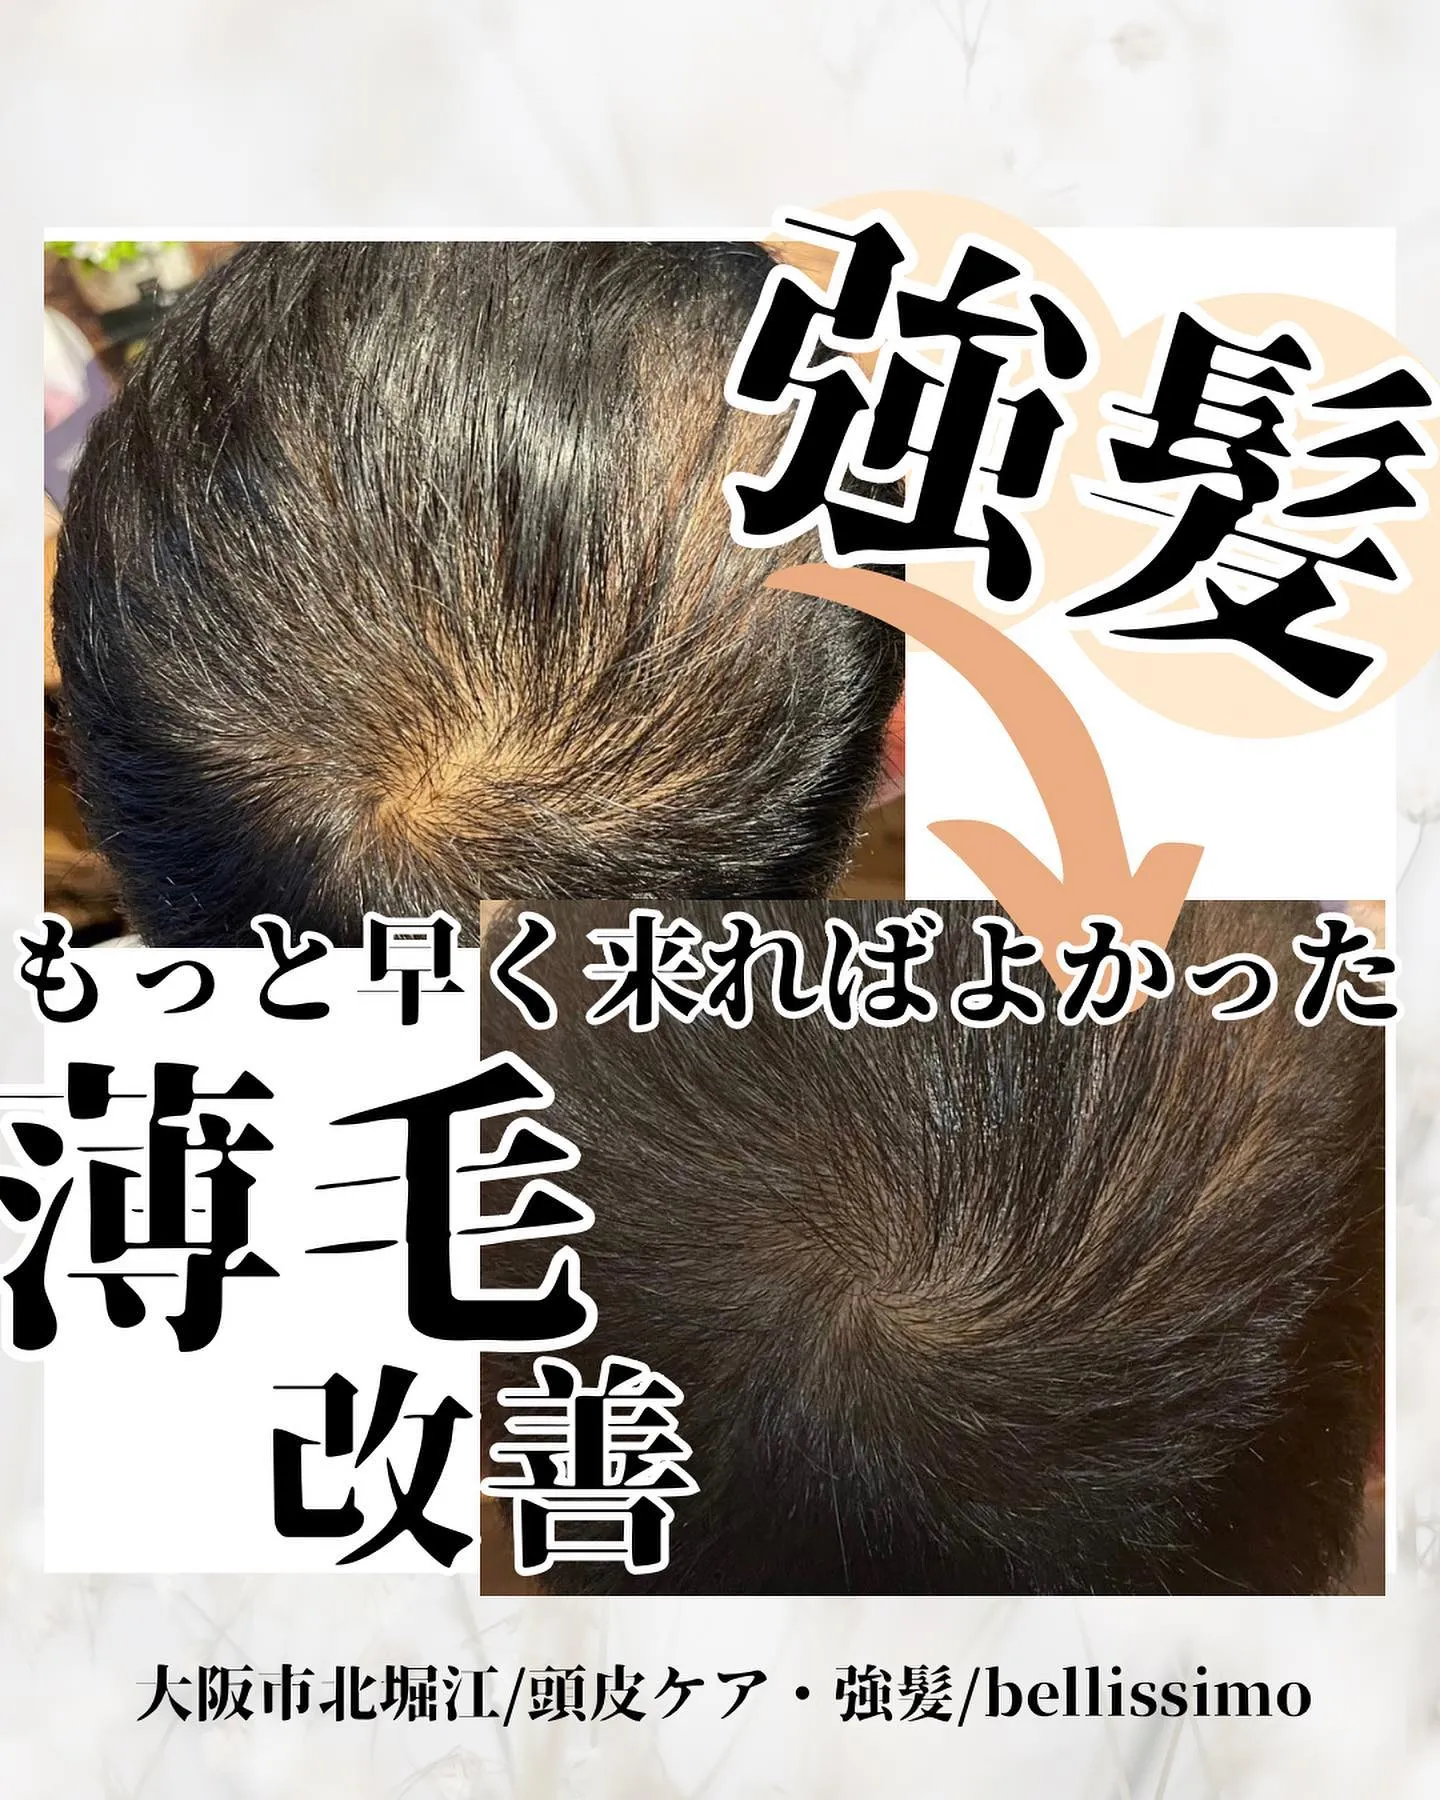 大阪市西区で頭皮ケア、強髪で薄毛改善もできるエステサロン